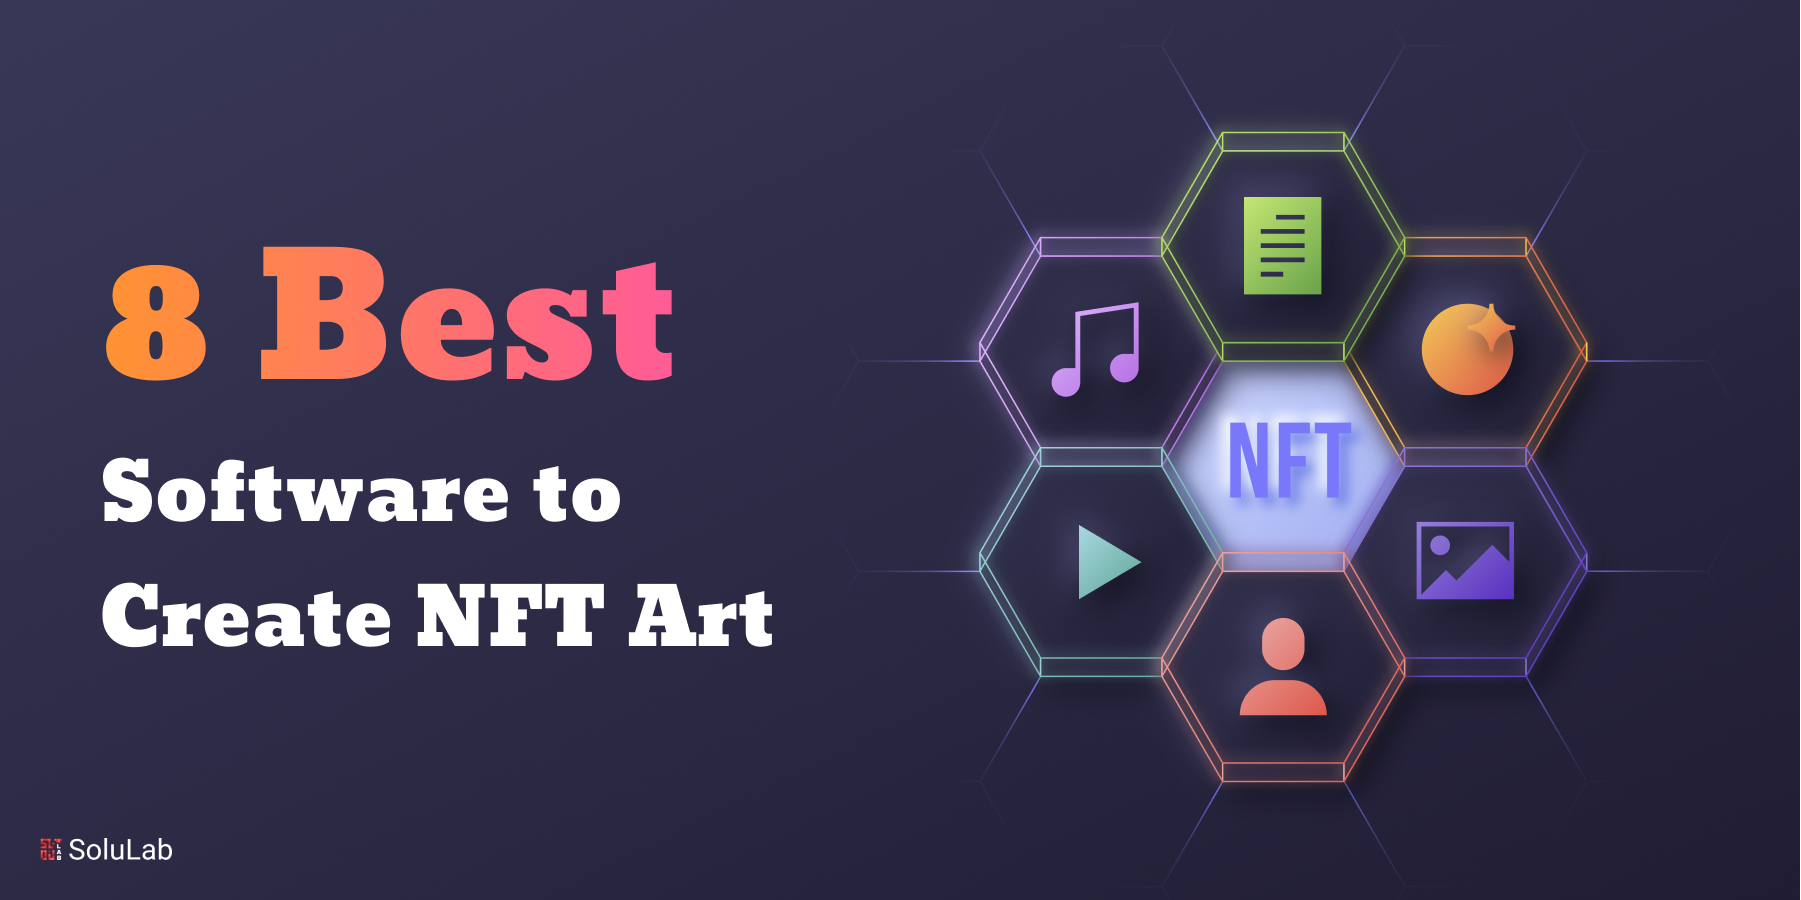 8 Best Software to Create NFT Art